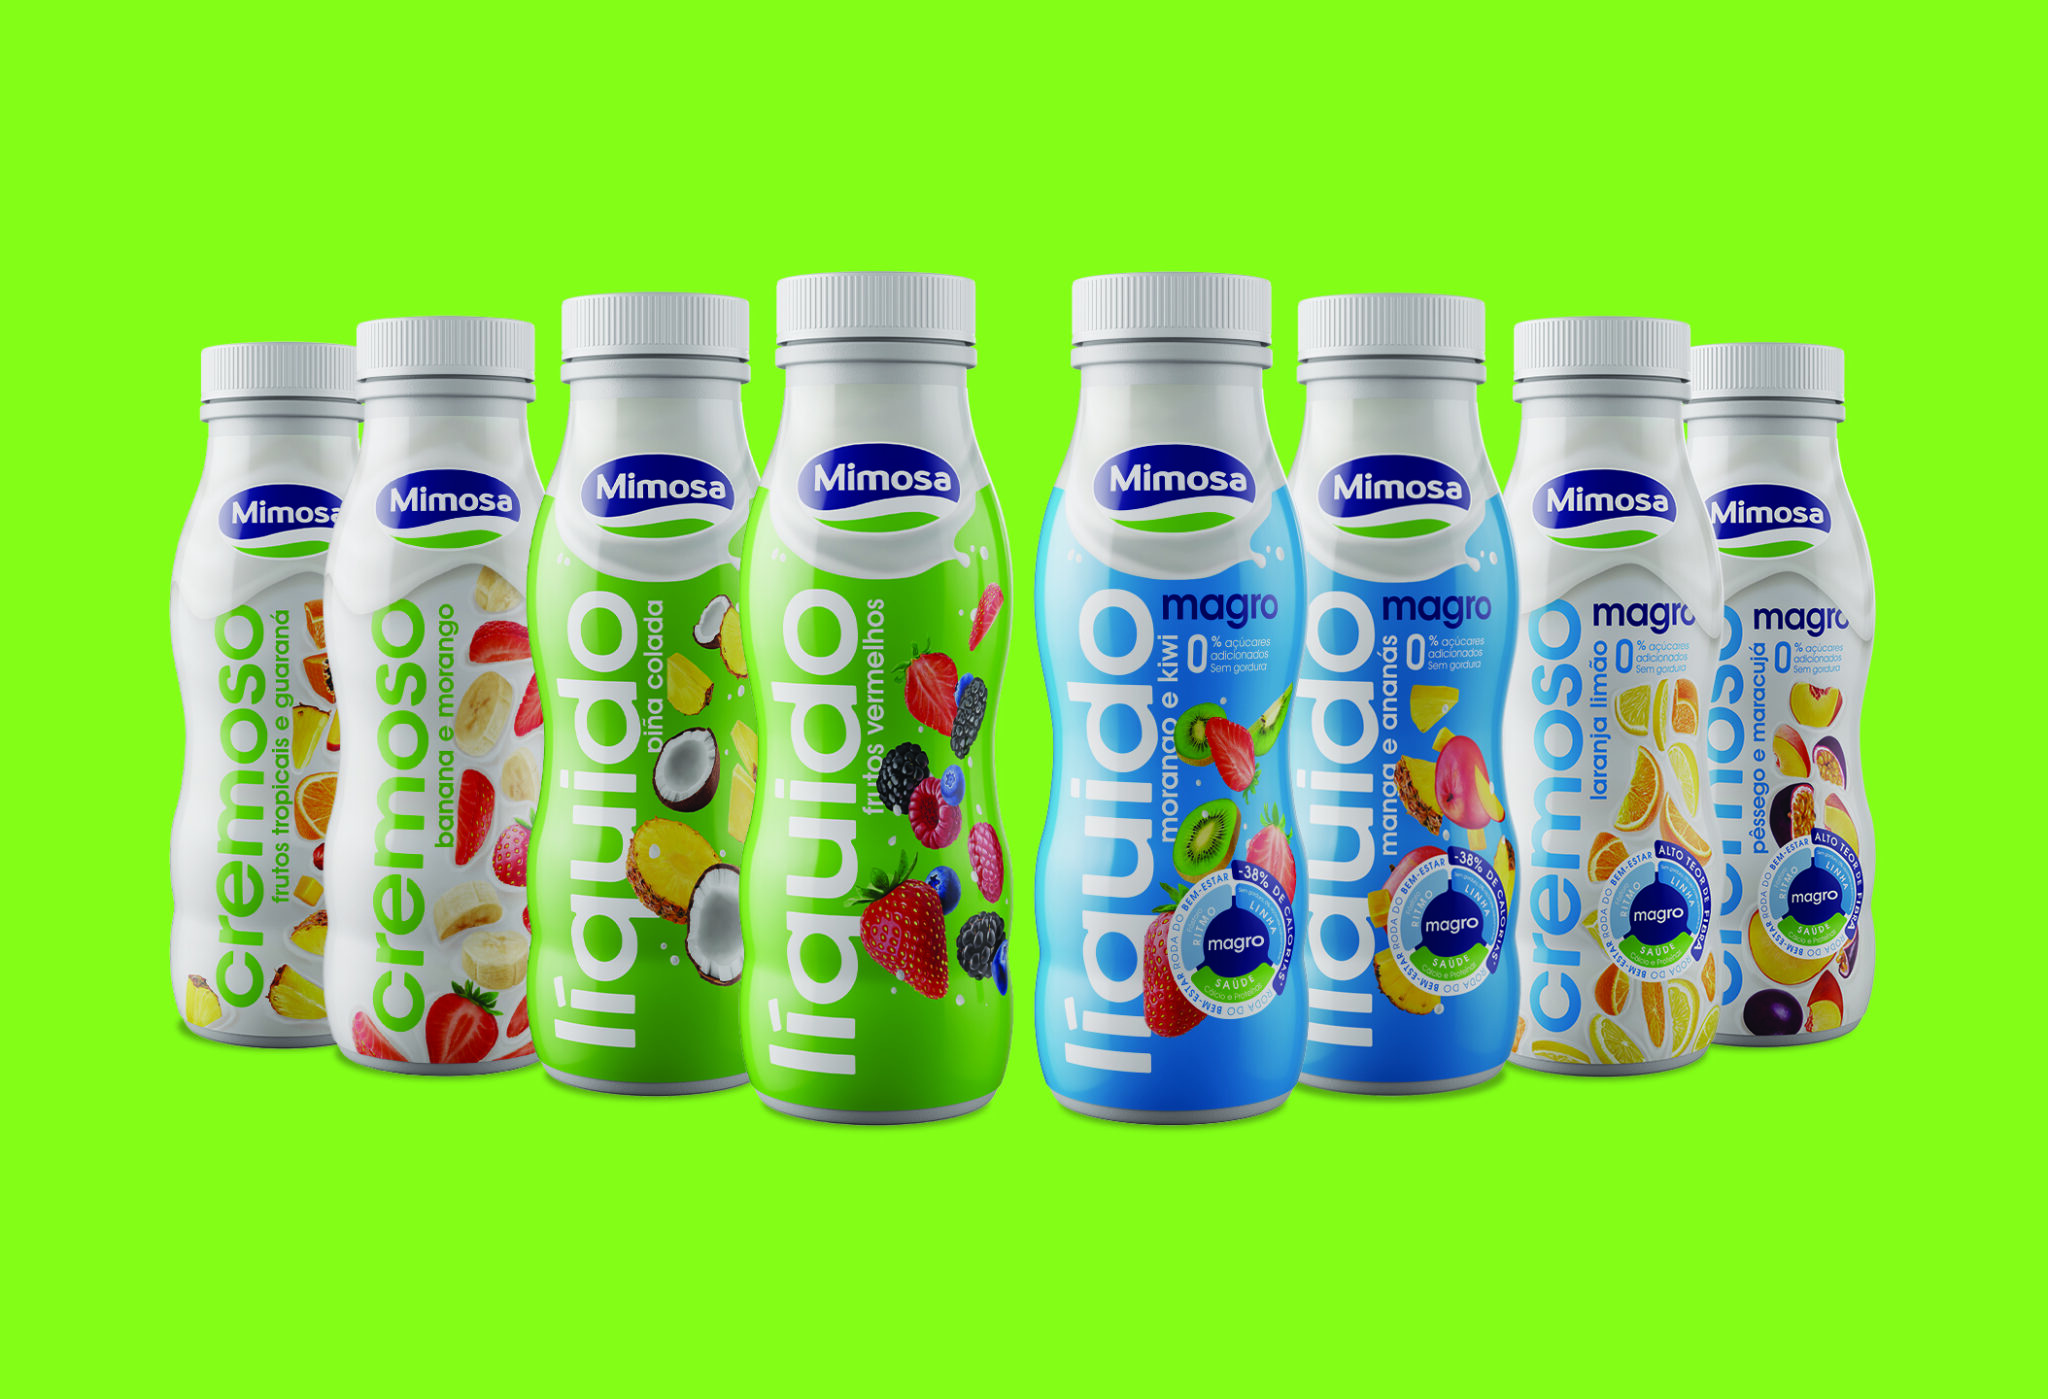 上海酸奶包装设计公司分享案例，Mimosa 是一个在乳制品行业拥有 50 多年经验的参考品牌，它的牛奶及酸奶产品包装设计在竞争激烈的酸奶行业感受到了一些挑战：其酸奶包装设计缺乏差异化和一致性，也没有传达出接近和信任的预期信息。因此，委托包装设计公司时它带着非常明确的目标与 VOLTA Studio 接洽：让其液态牛奶包装设计和奶油酸奶包装设计的形象更容易识别、更现代、线性更强。